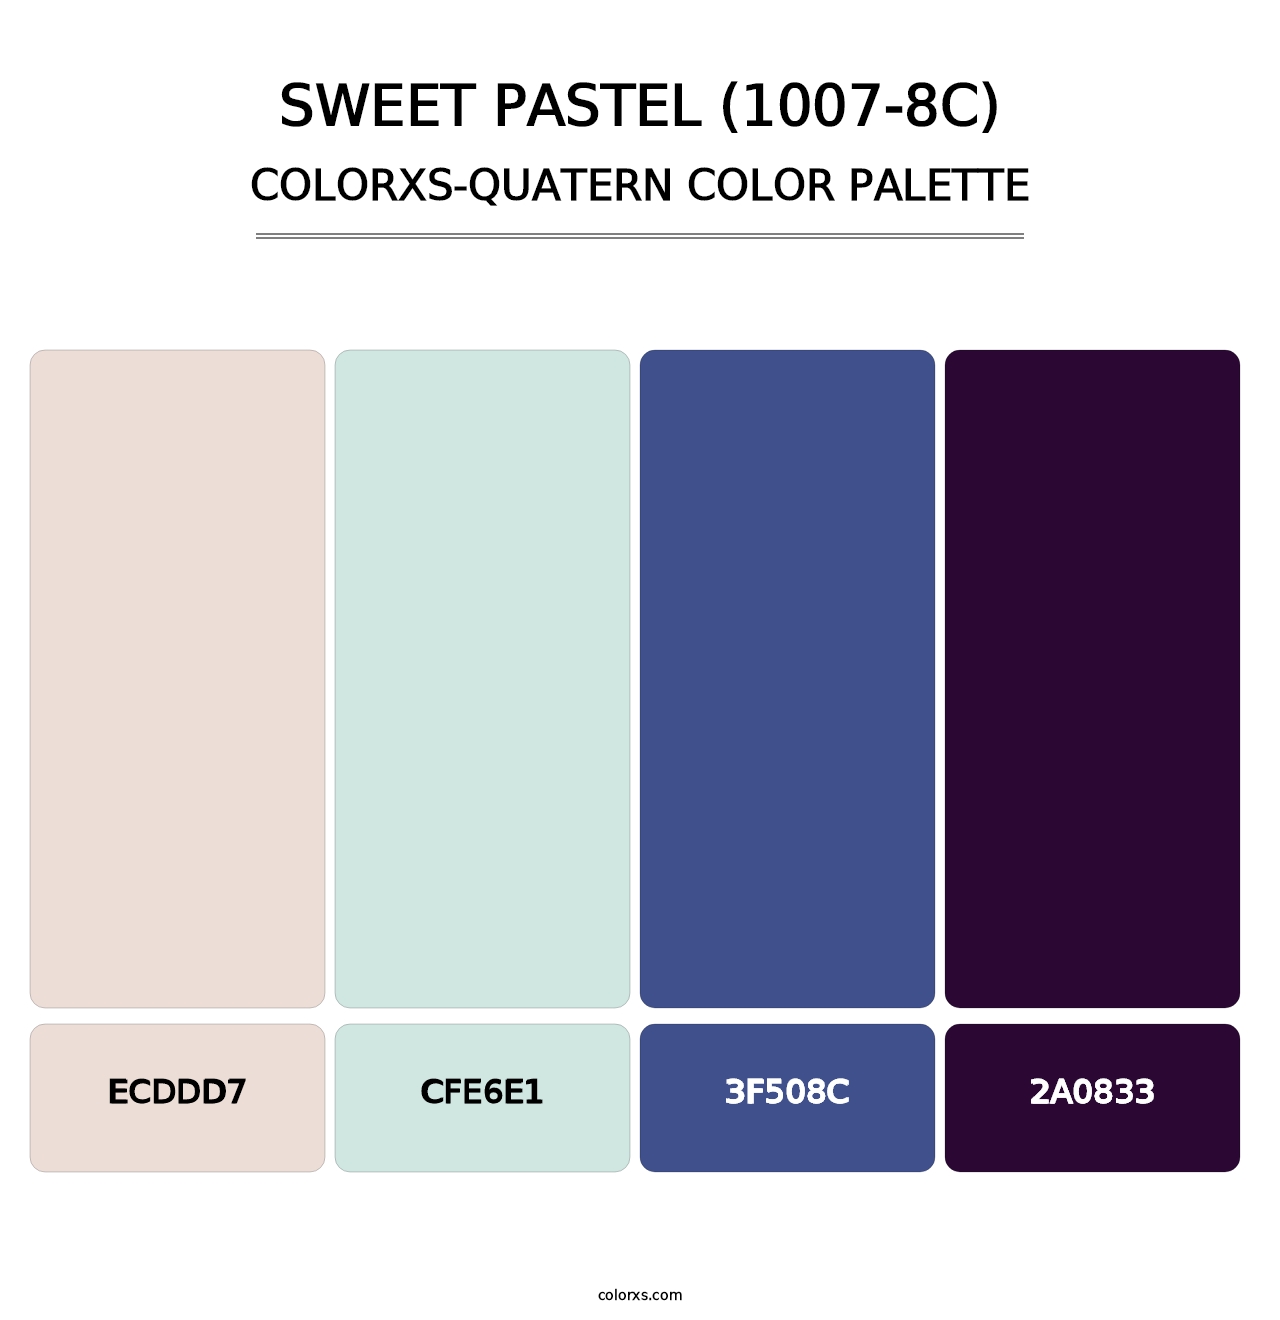 Sweet Pastel (1007-8C) - Colorxs Quatern Palette